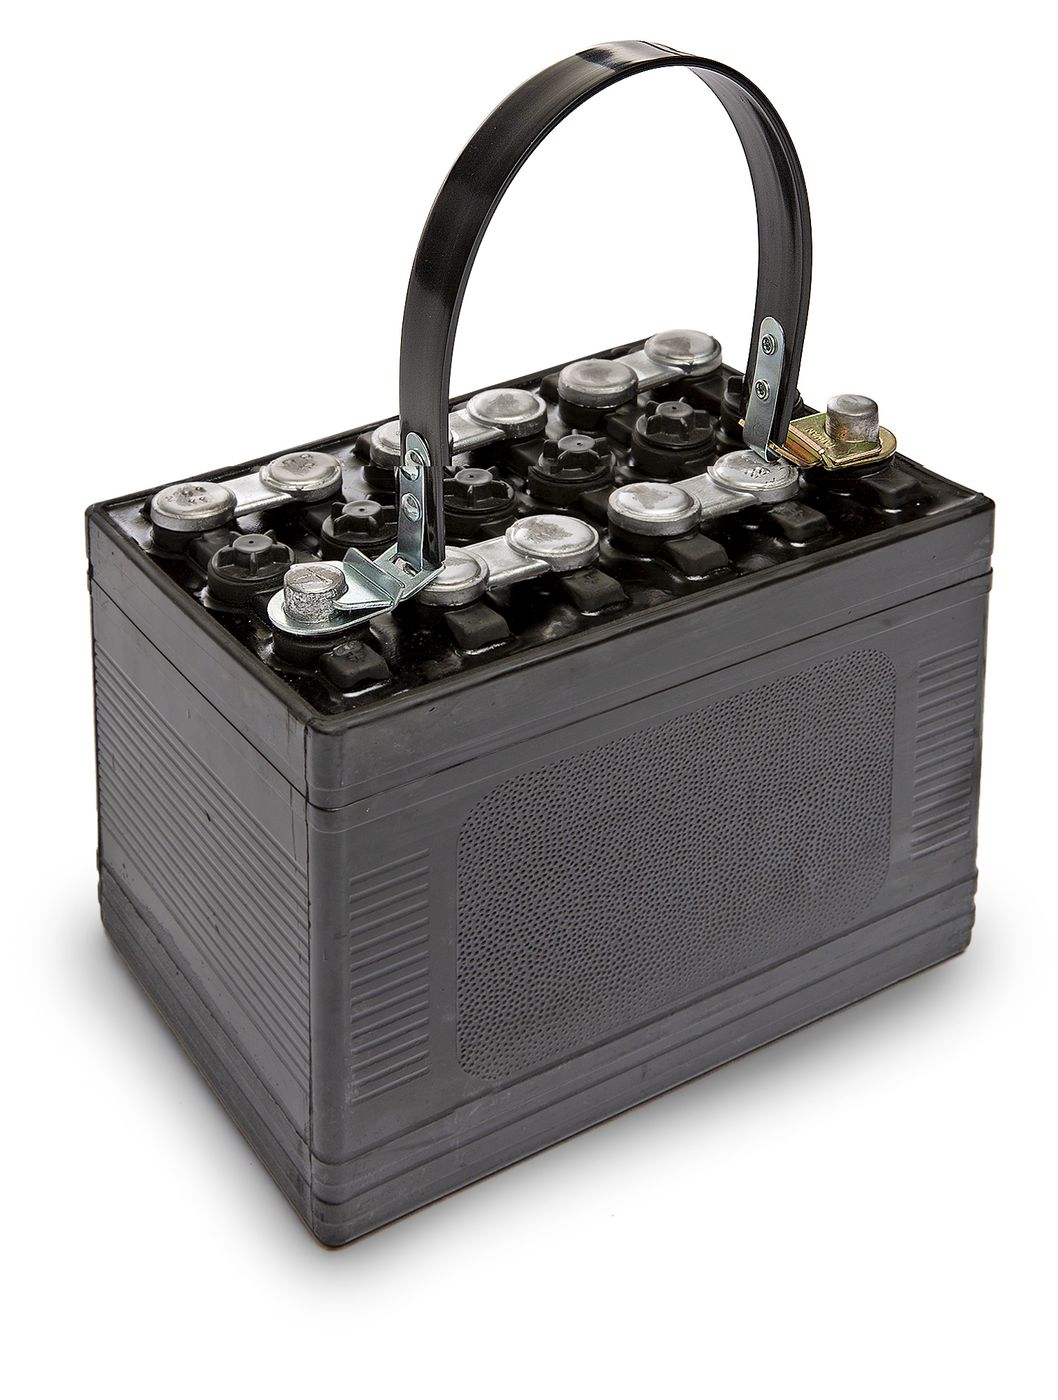 Batterie-Tragegurt
Battery Carrying Strap
Lève-piles
Elevador d